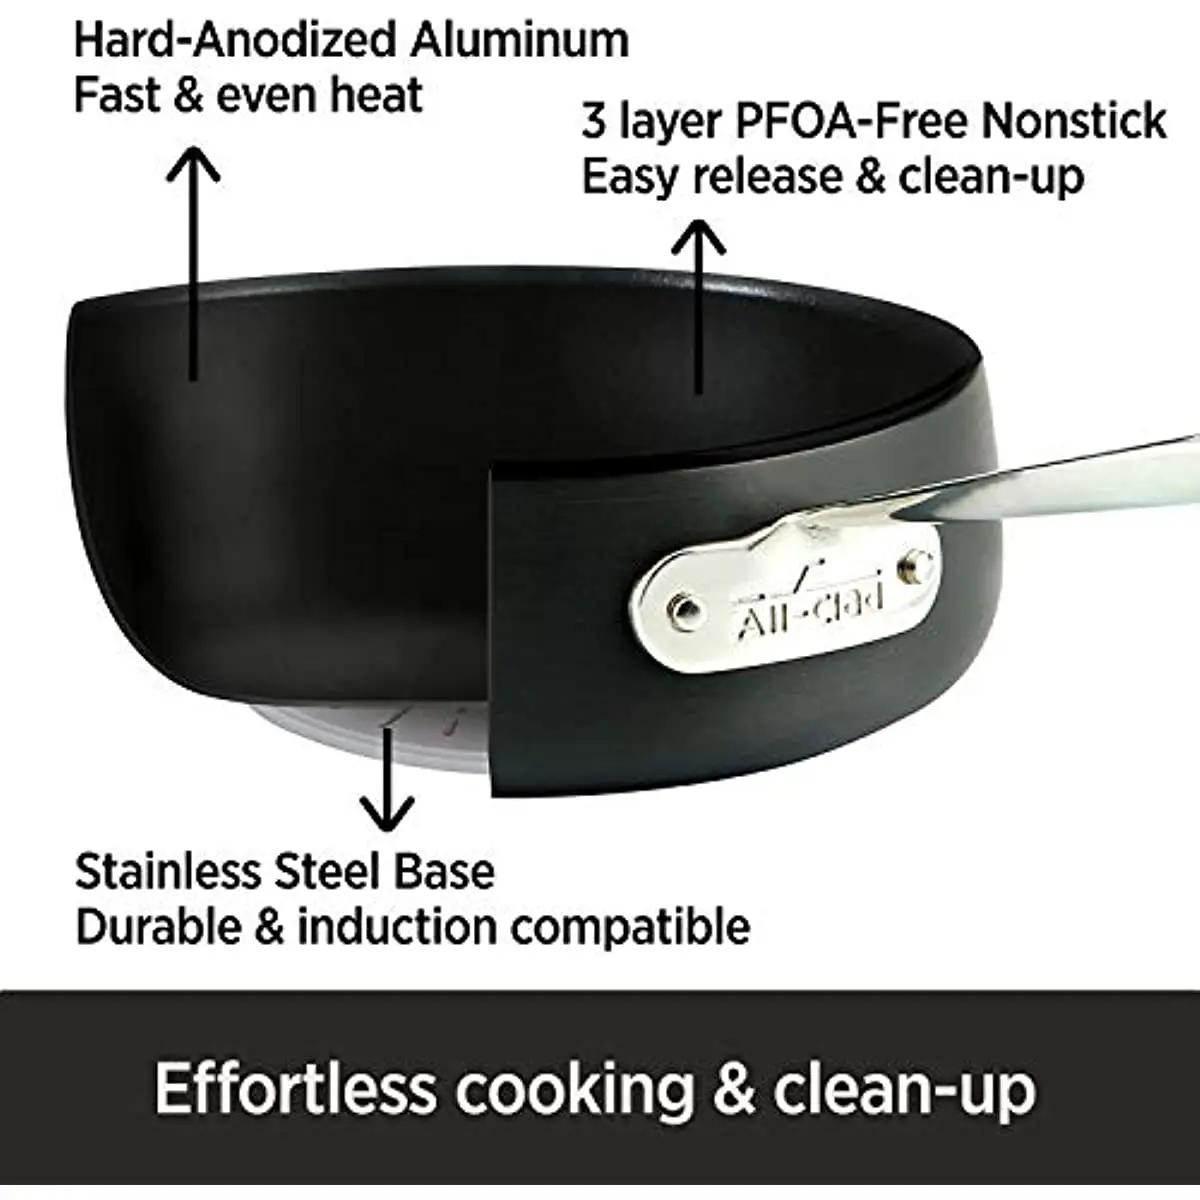 https://ae01.alicdn.com/kf/Se9c48de49b854818b0cb02383f896c43G/All-Clad-HA1-Hard-Anodized-Nonstick-Cookware-Set-13-Piece-Induction-Pots-Pans-Black.jpg